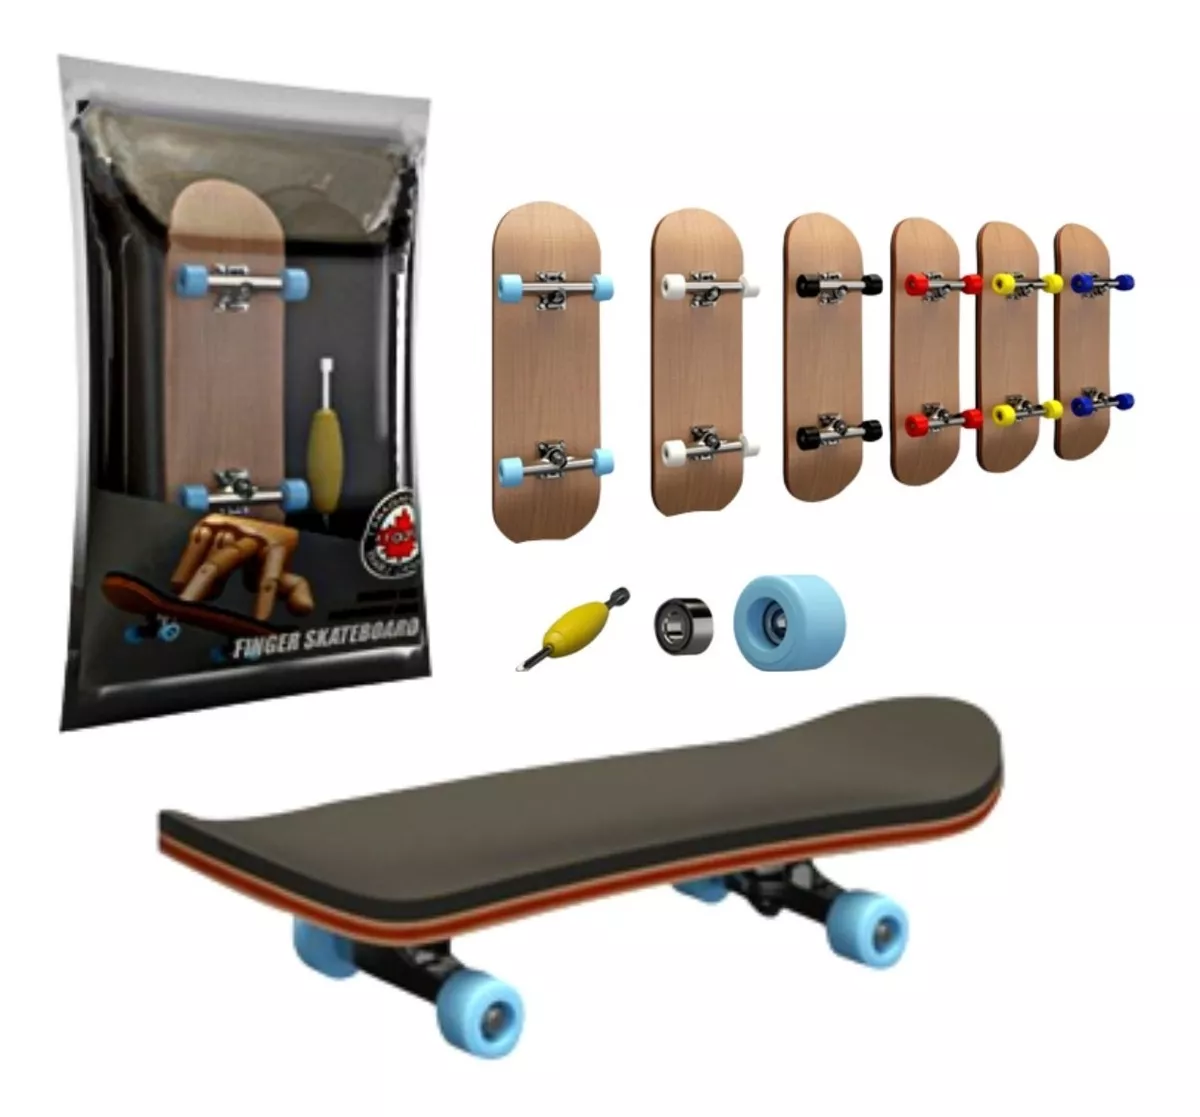 Skate Dedo Profissional Fingerboard De Madeira Brinquedo